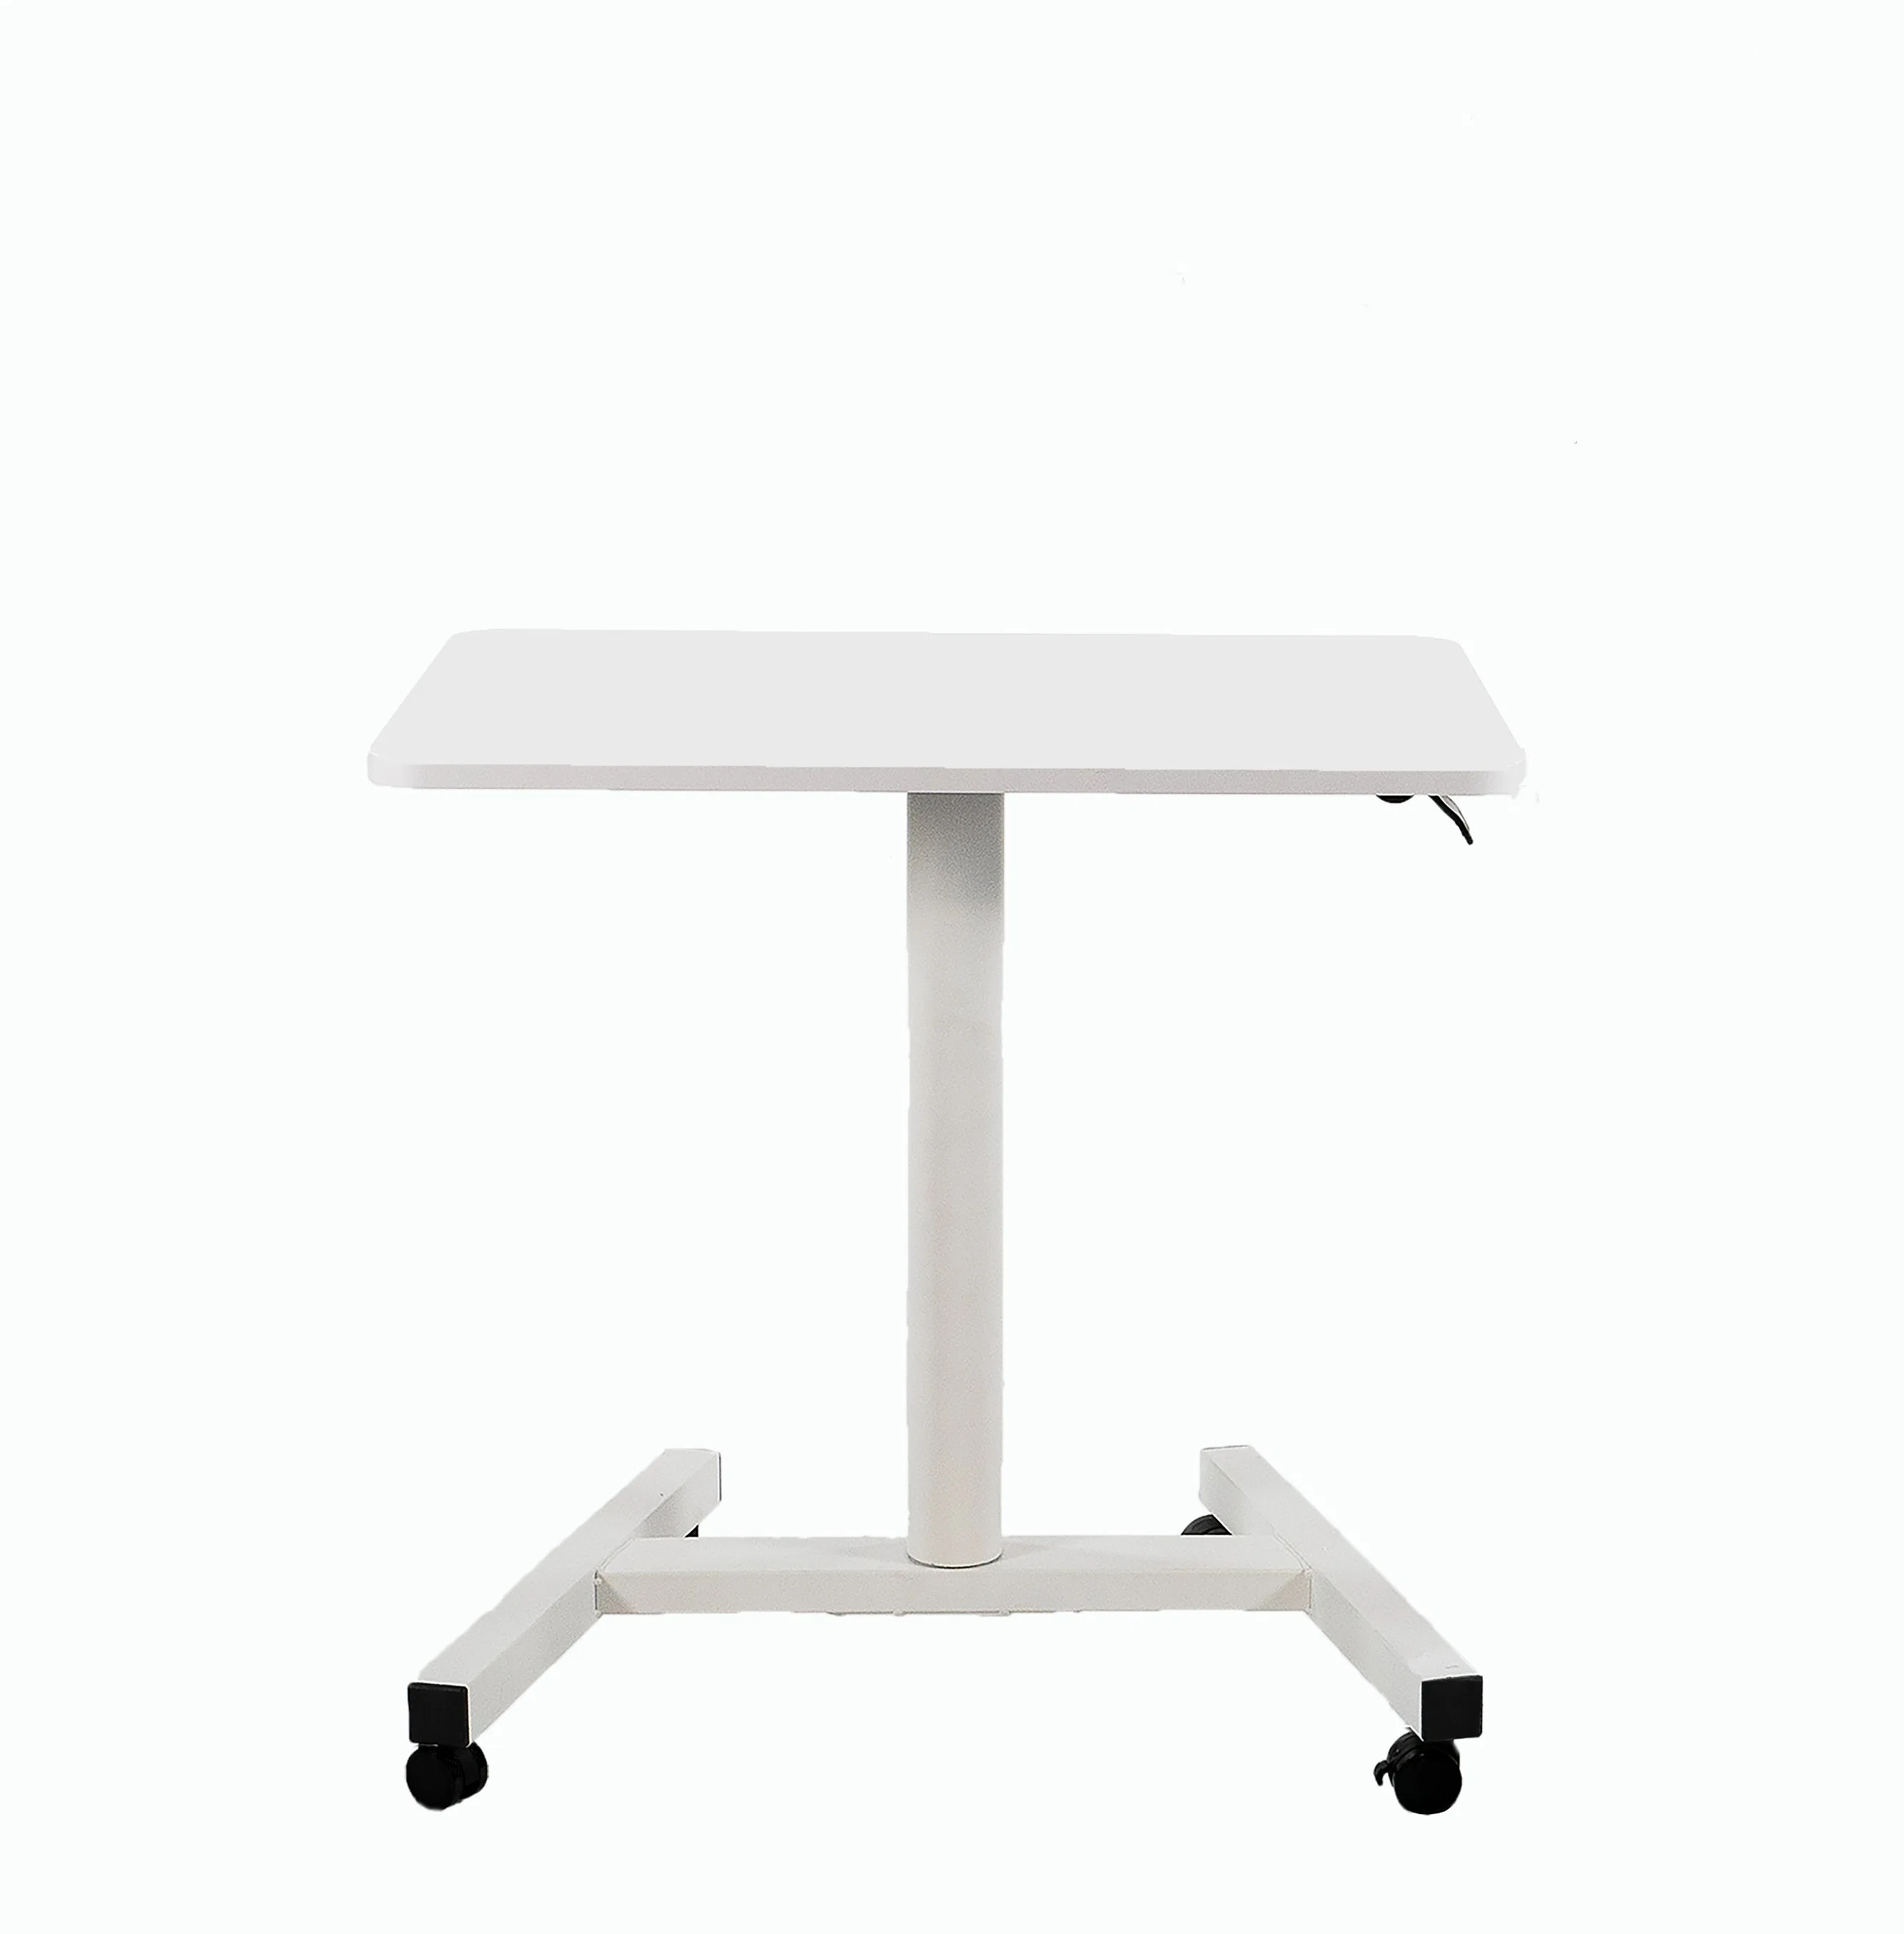 Европейский дизайн пневматического компьютерный стол с регулировкой по высоте / подвижная ноутбук в таблице